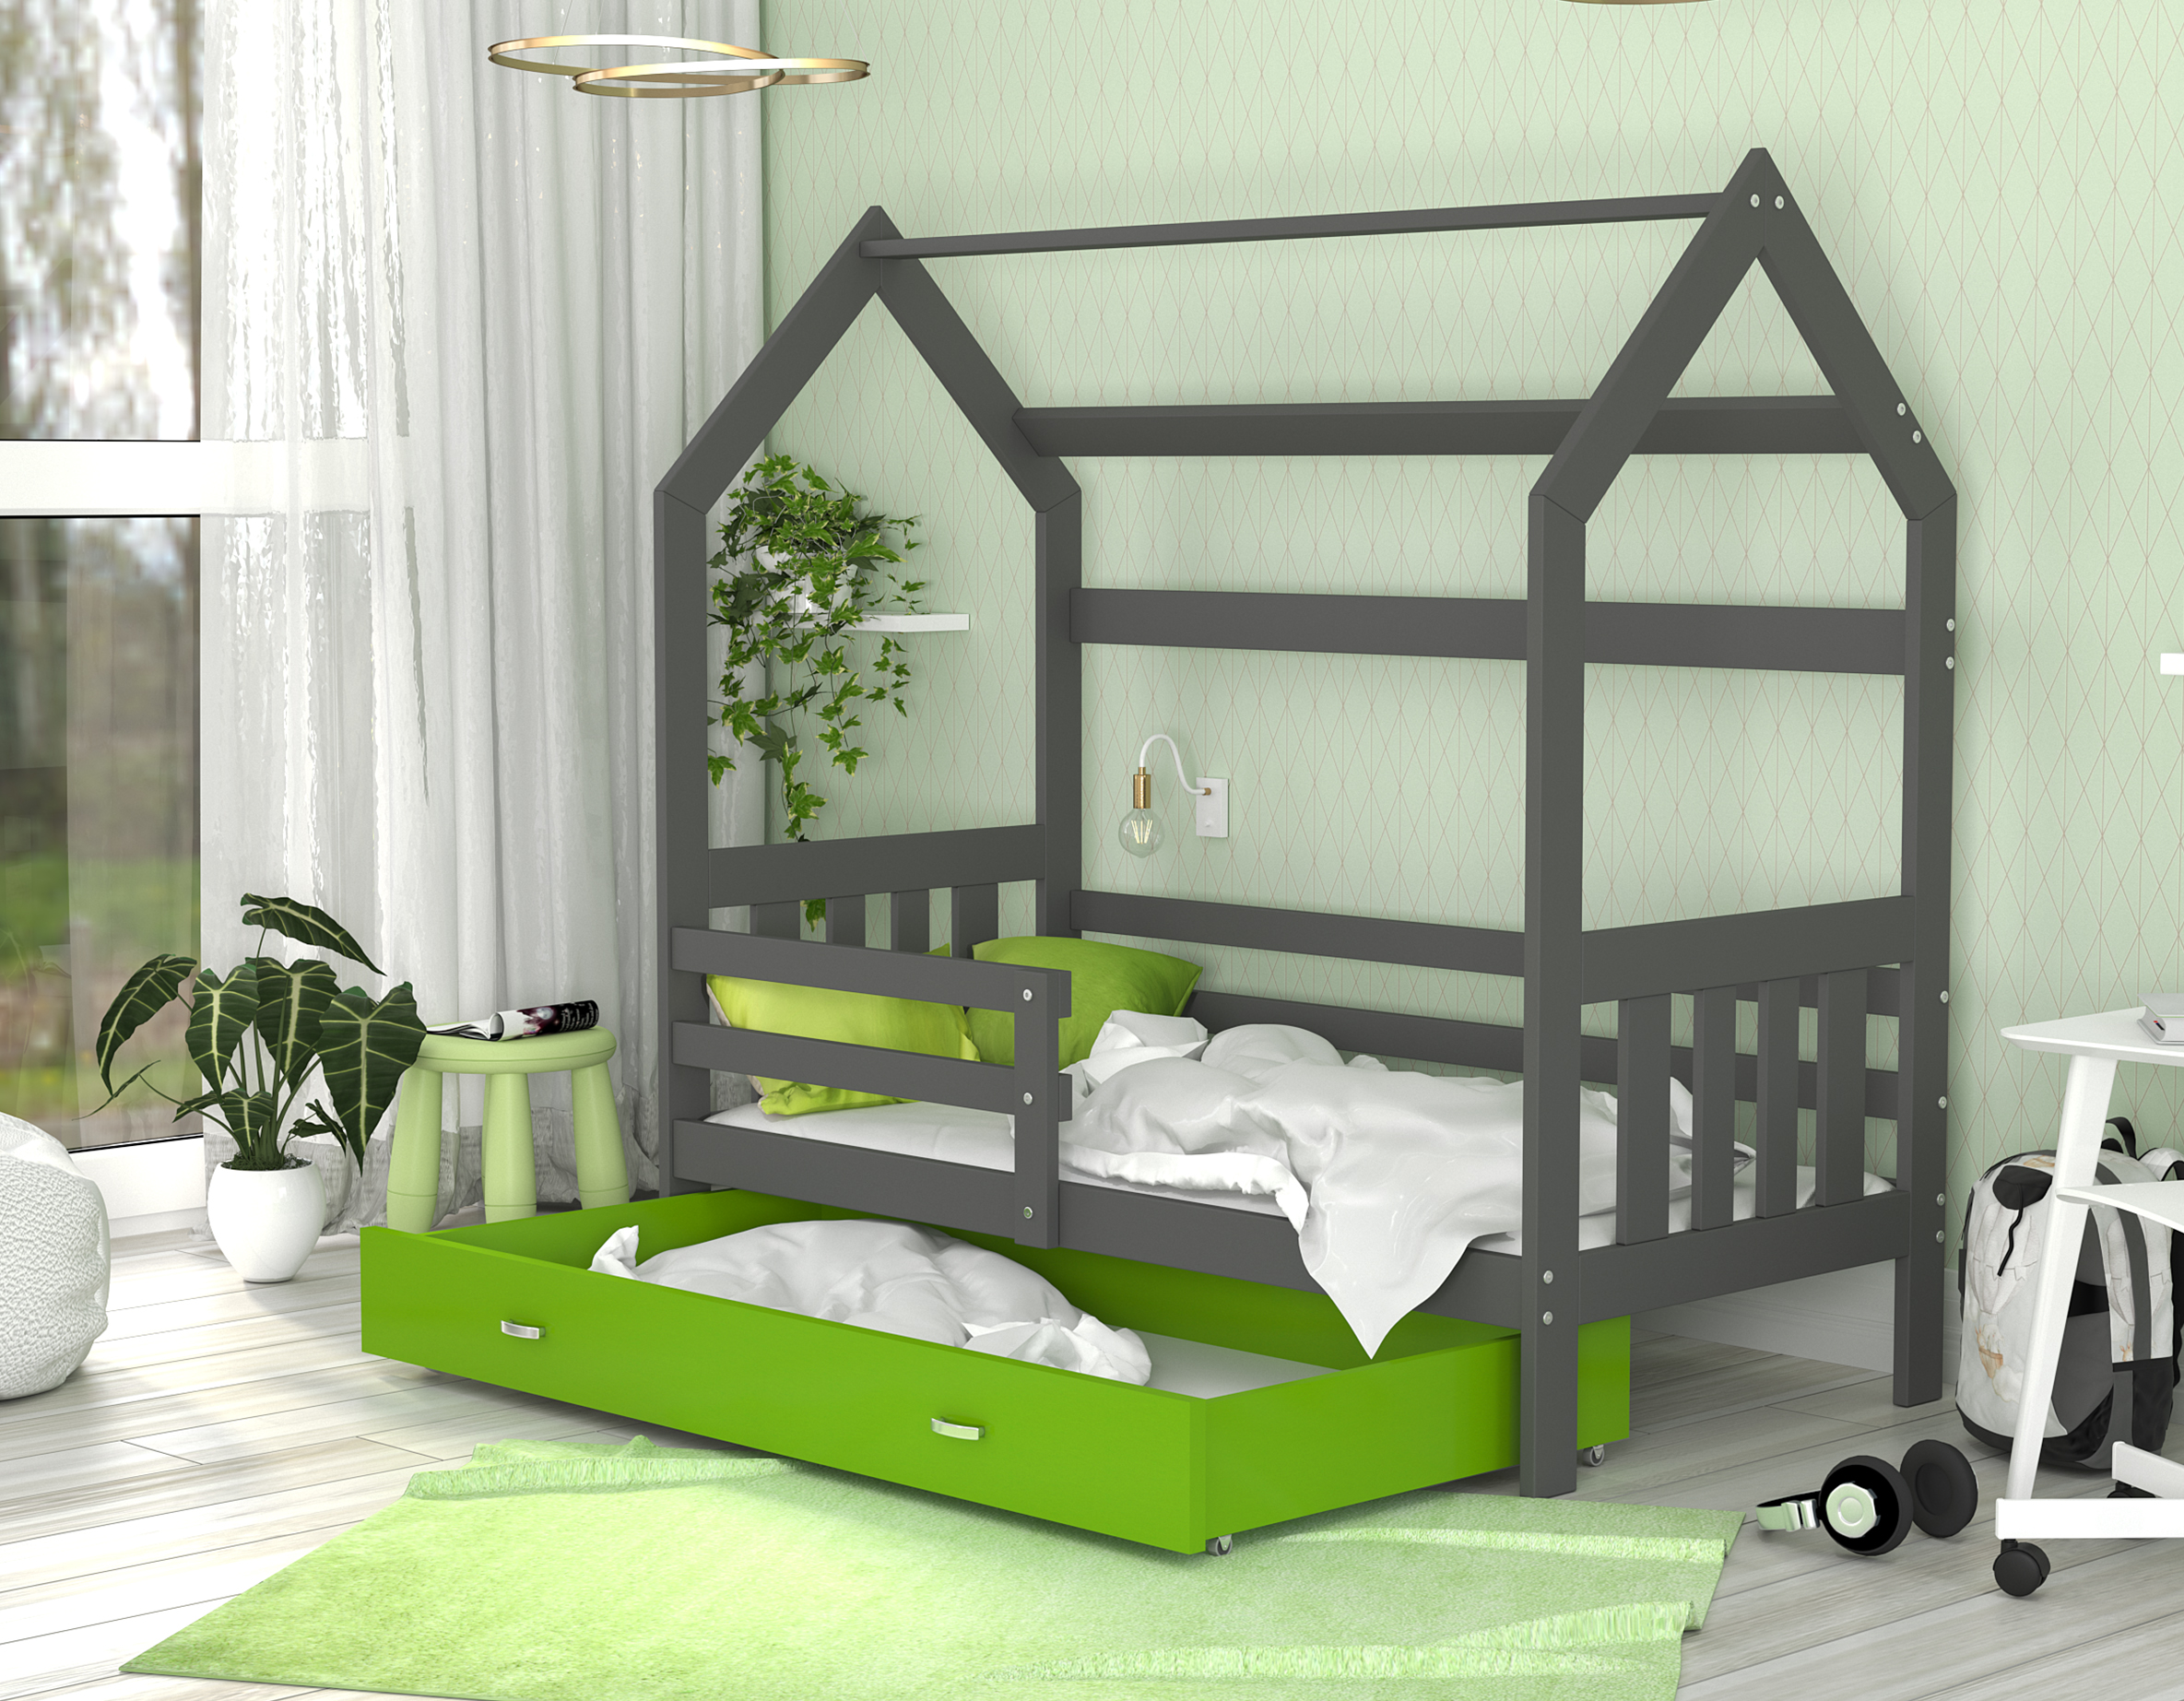 Dětská postel DOMEK 2 se šuplíkem 190x80 cm šedá zelená